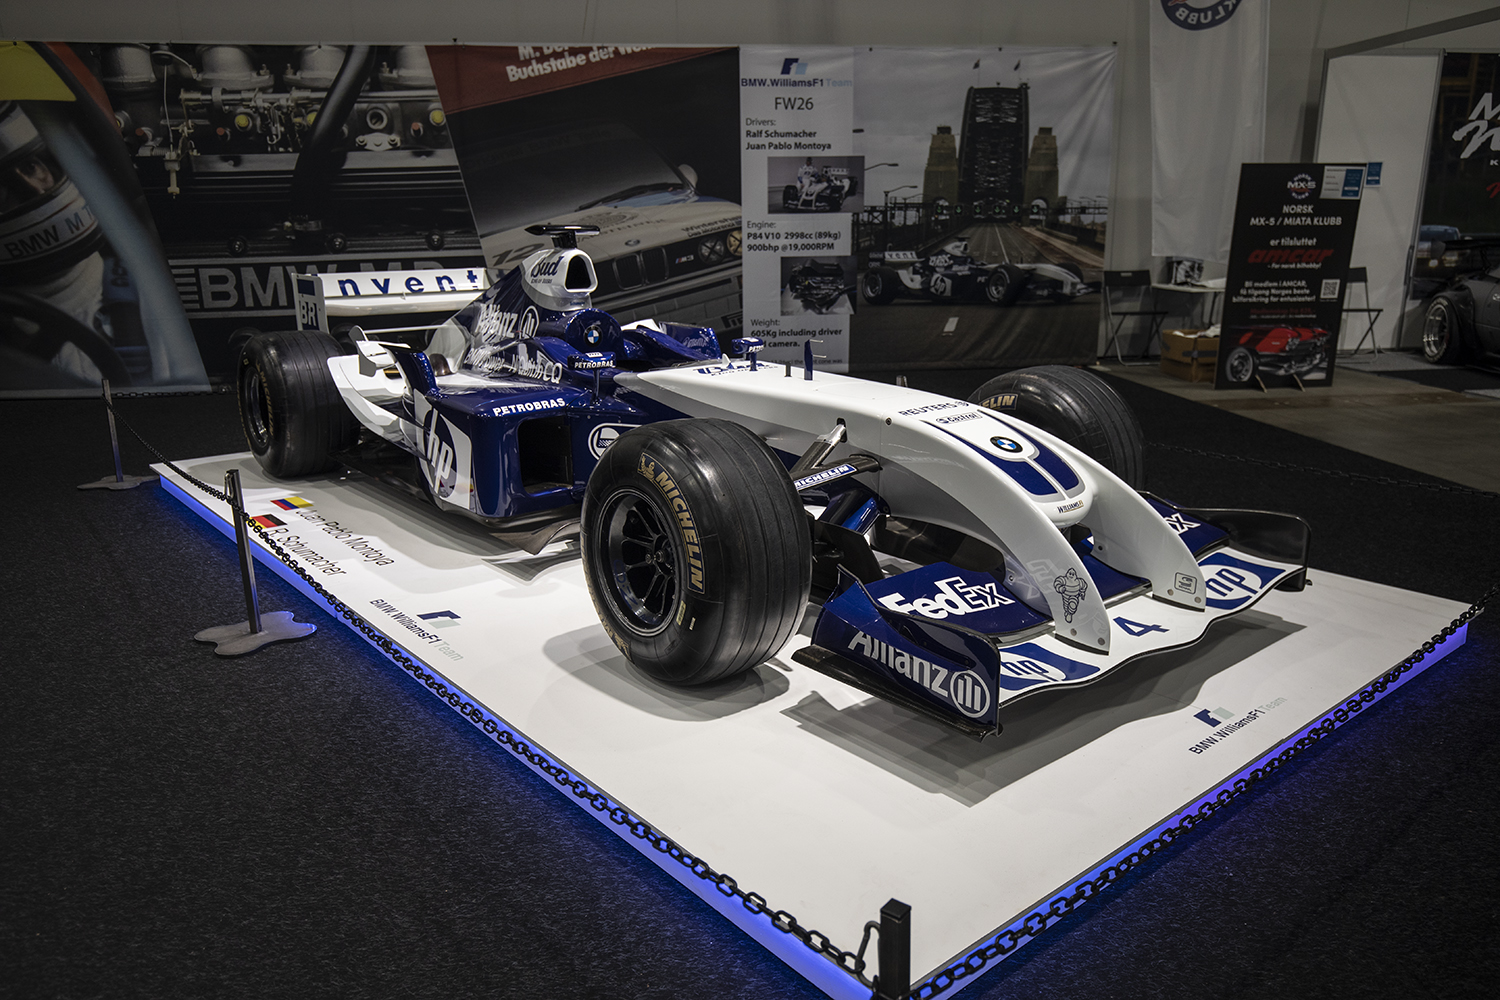 Ikke ofte en kan stå så nærme en ekte Formel 1-bil. Dette er 2004 Williams FW26. 